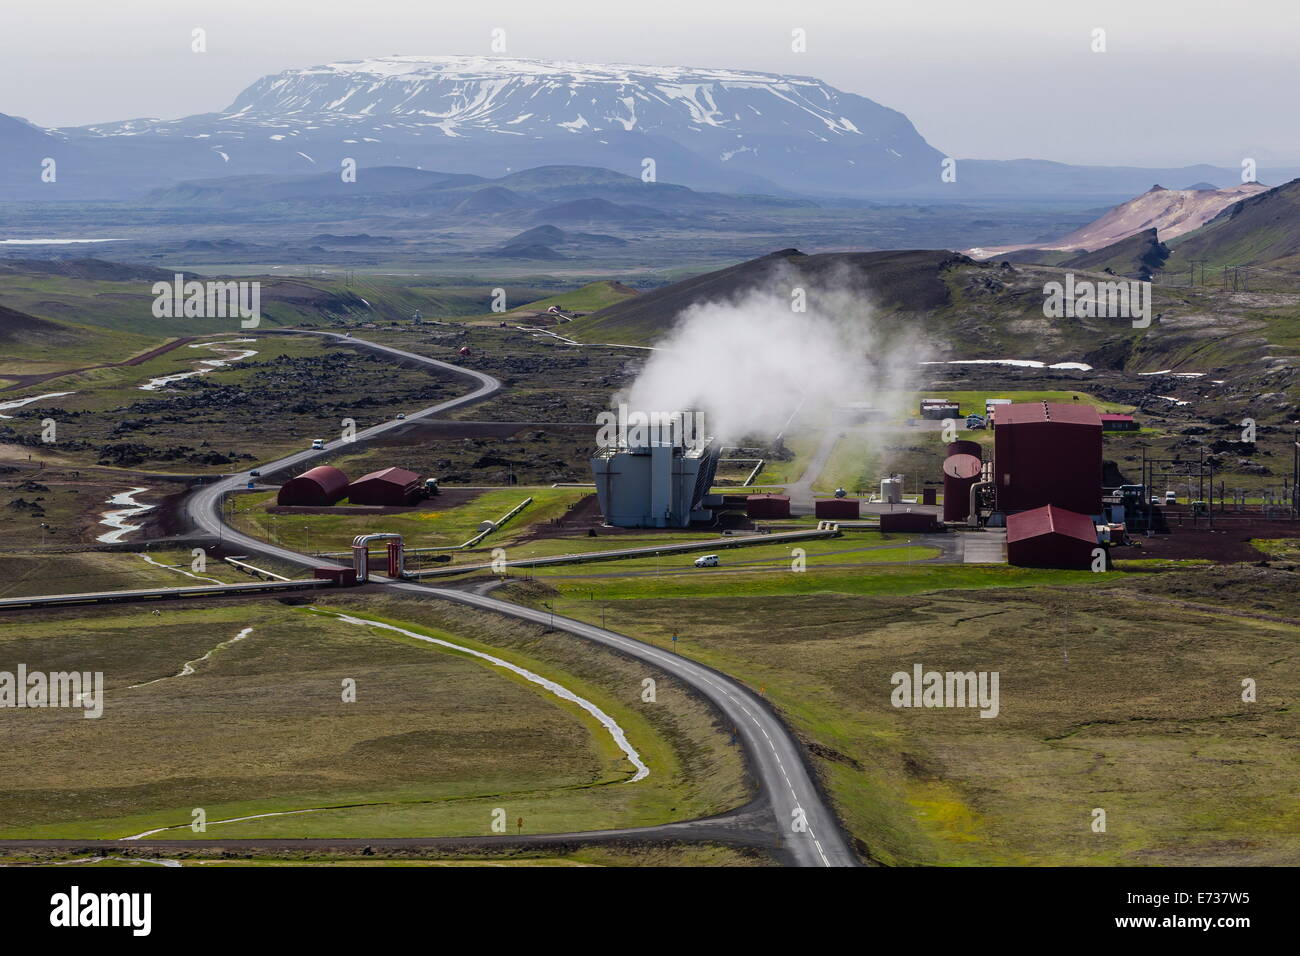 L'energia geotermica Krafla Power Station, la più grande stazione elettrica geotermica in Islanda, si trova vicino al vulcano Krafla, Islanda Foto Stock